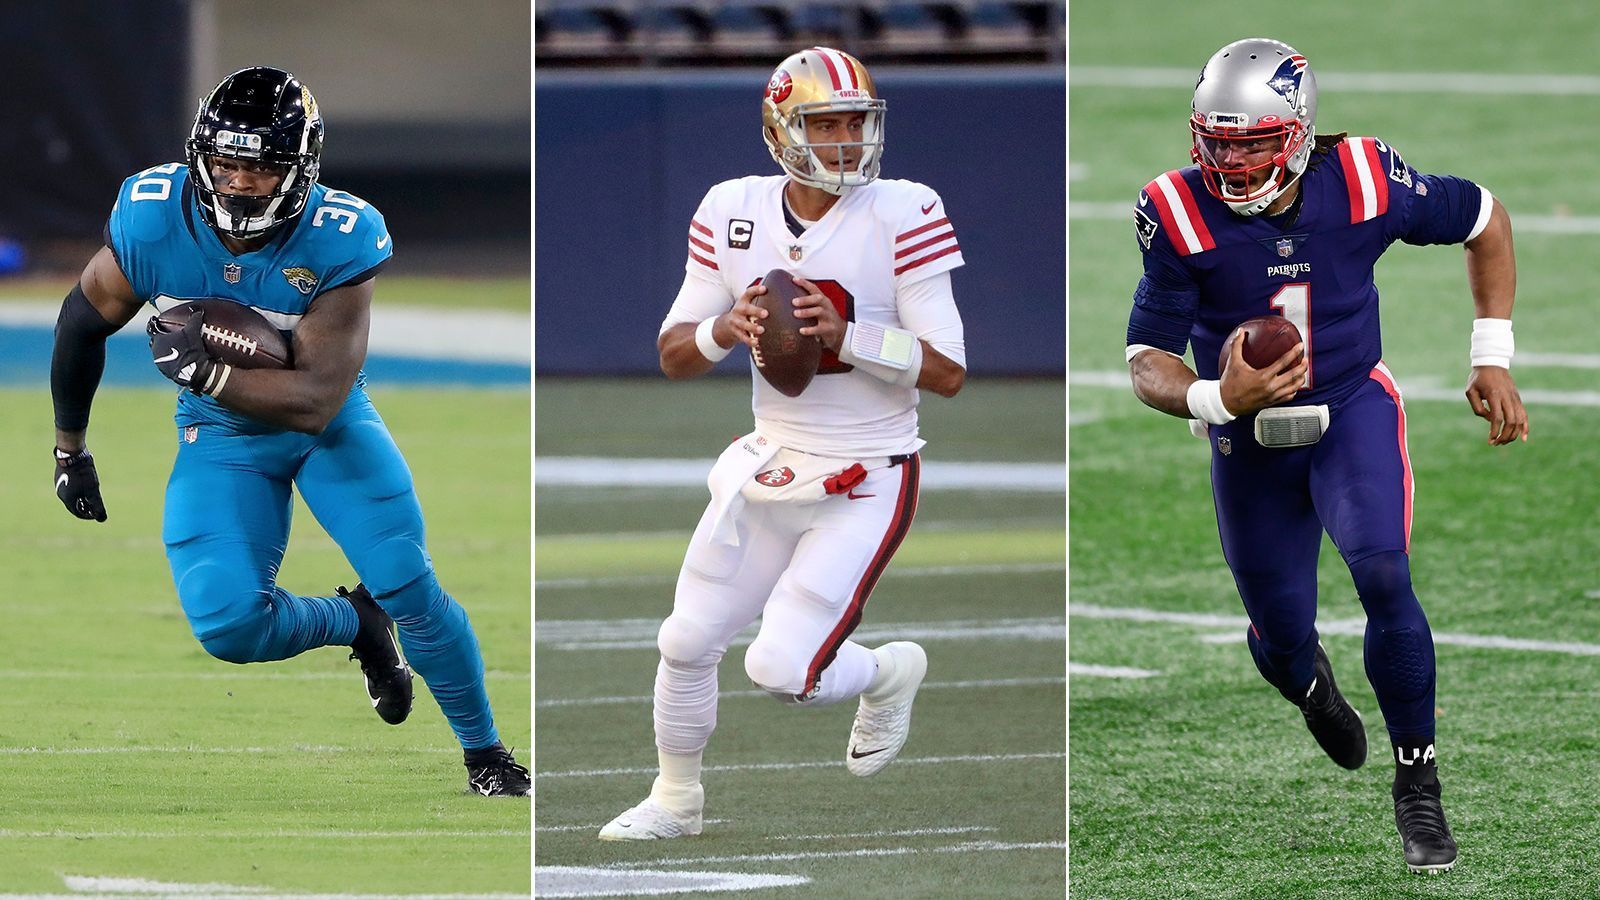 
                <strong>Nach dem NFL Draft: Diese Stars müssen um ihren Starter-Platz zittern</strong><br>
                Im NFL Draft 2021 haben sich die Teams mit vielen Talenten verstärkt. Einige gestandene Star-Spieler müssen nun um ihren Starter-Platz kämpfen. ran.de stellt sie und ihre Herausforderer vor.
              